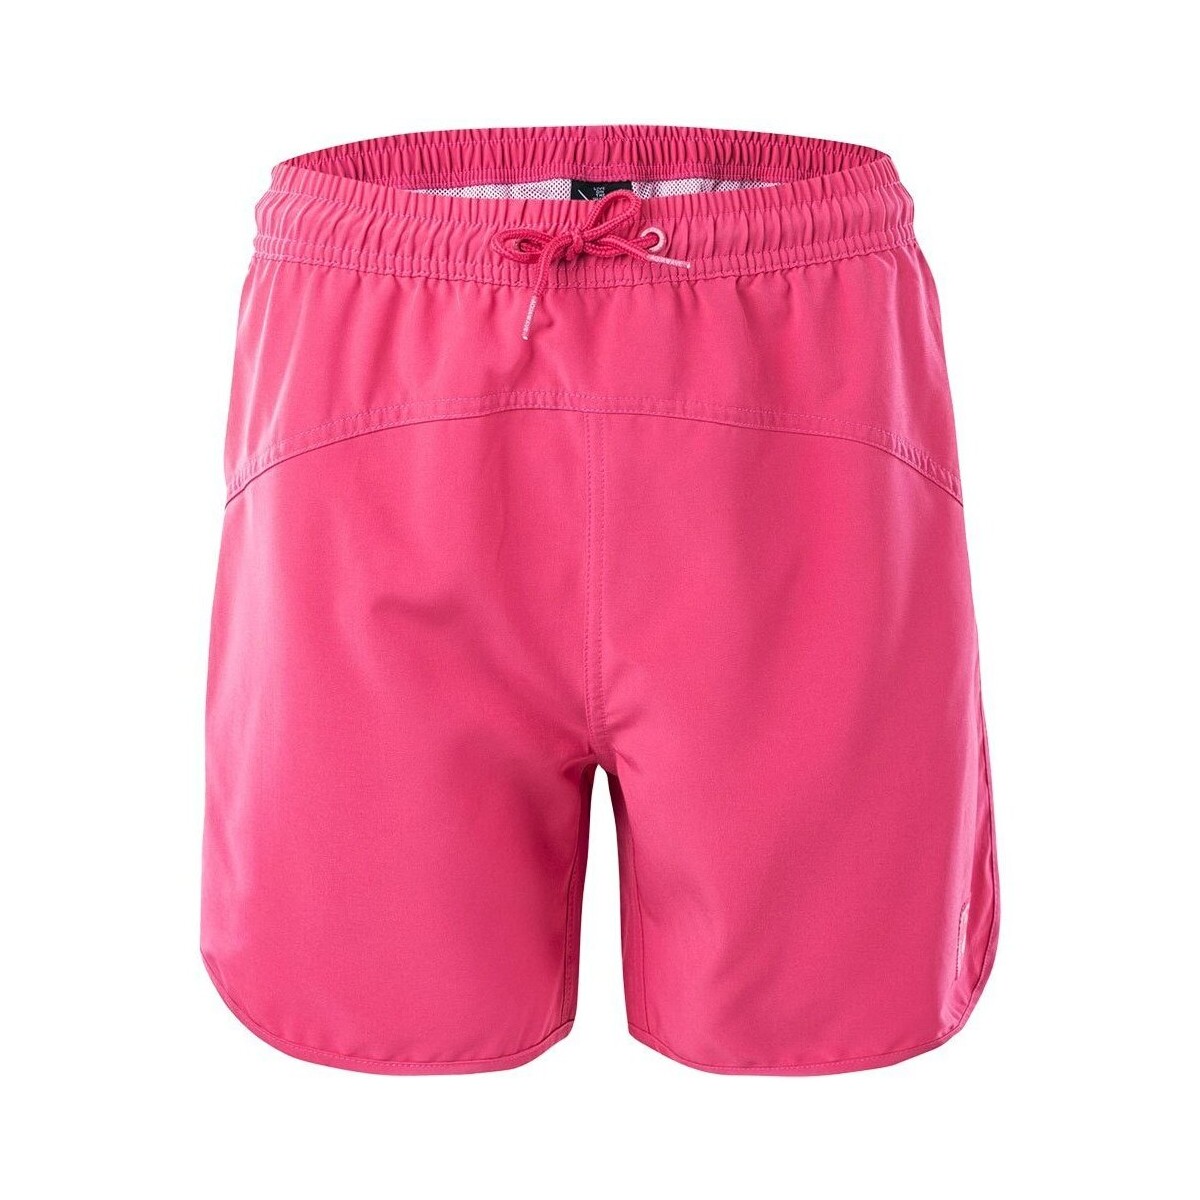 Vêtements Femme Maillots / Shorts de bain Aquawave Rossina Multicolore